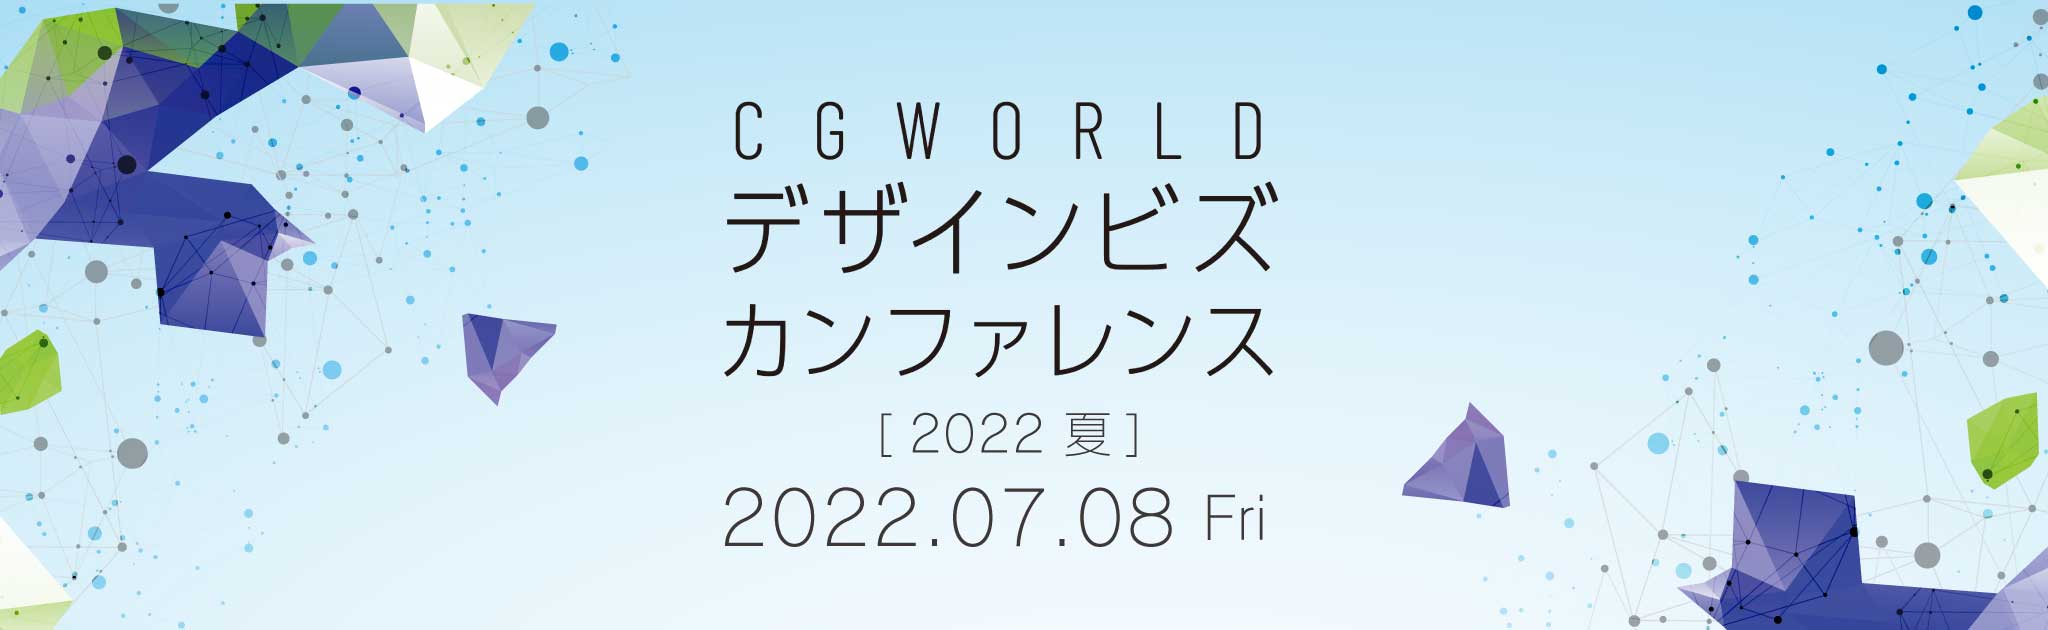 CGWORLD デザインビズカンファレンス [2022 夏]